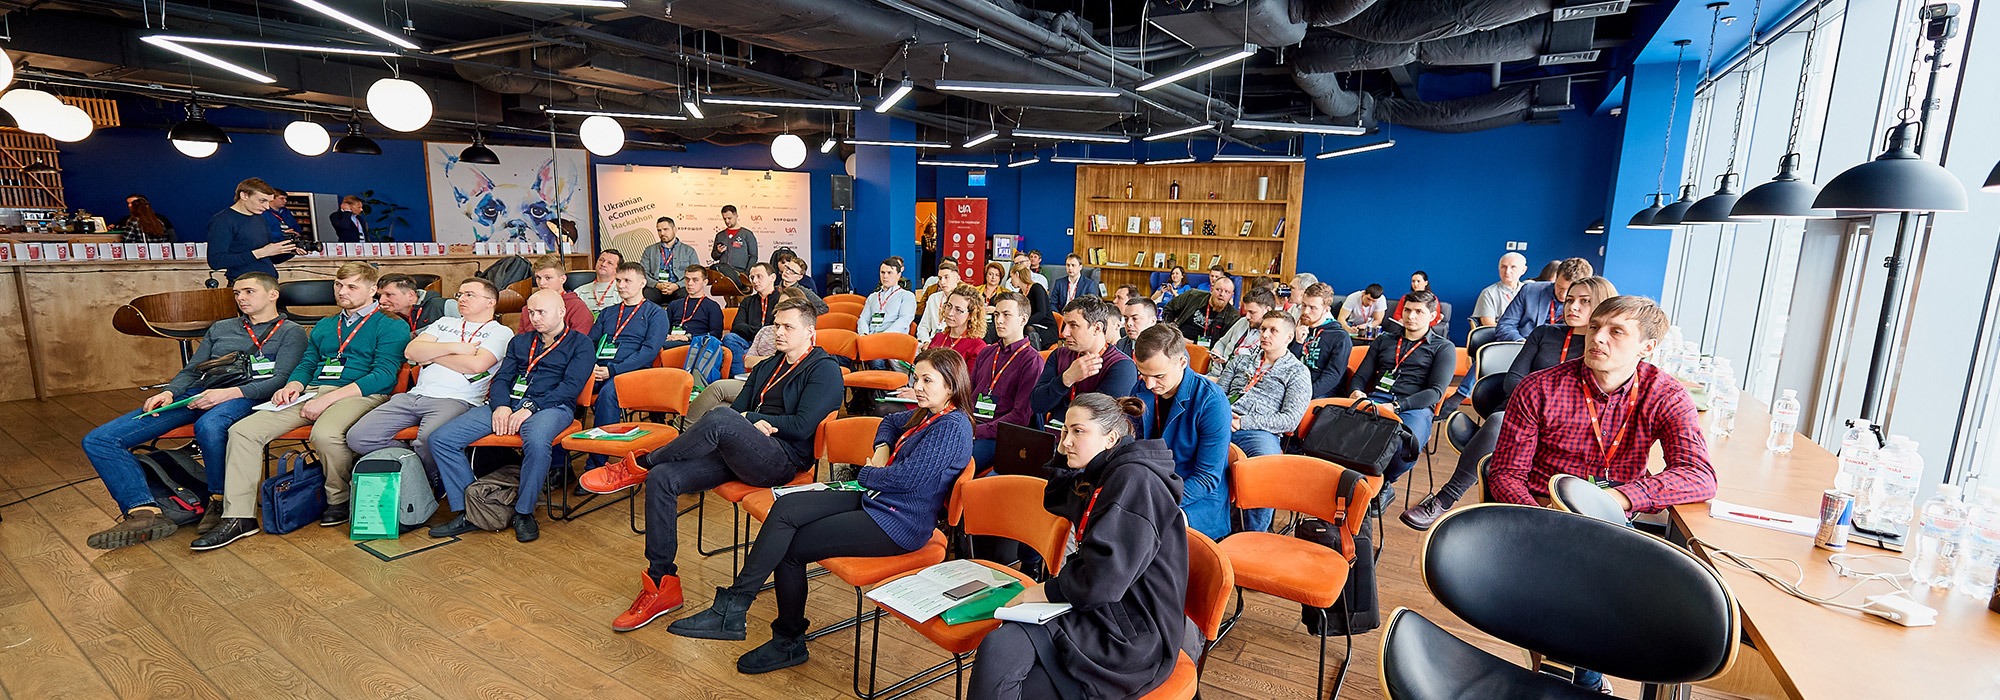 Ecommerce Hackathon по-українськи: як це було